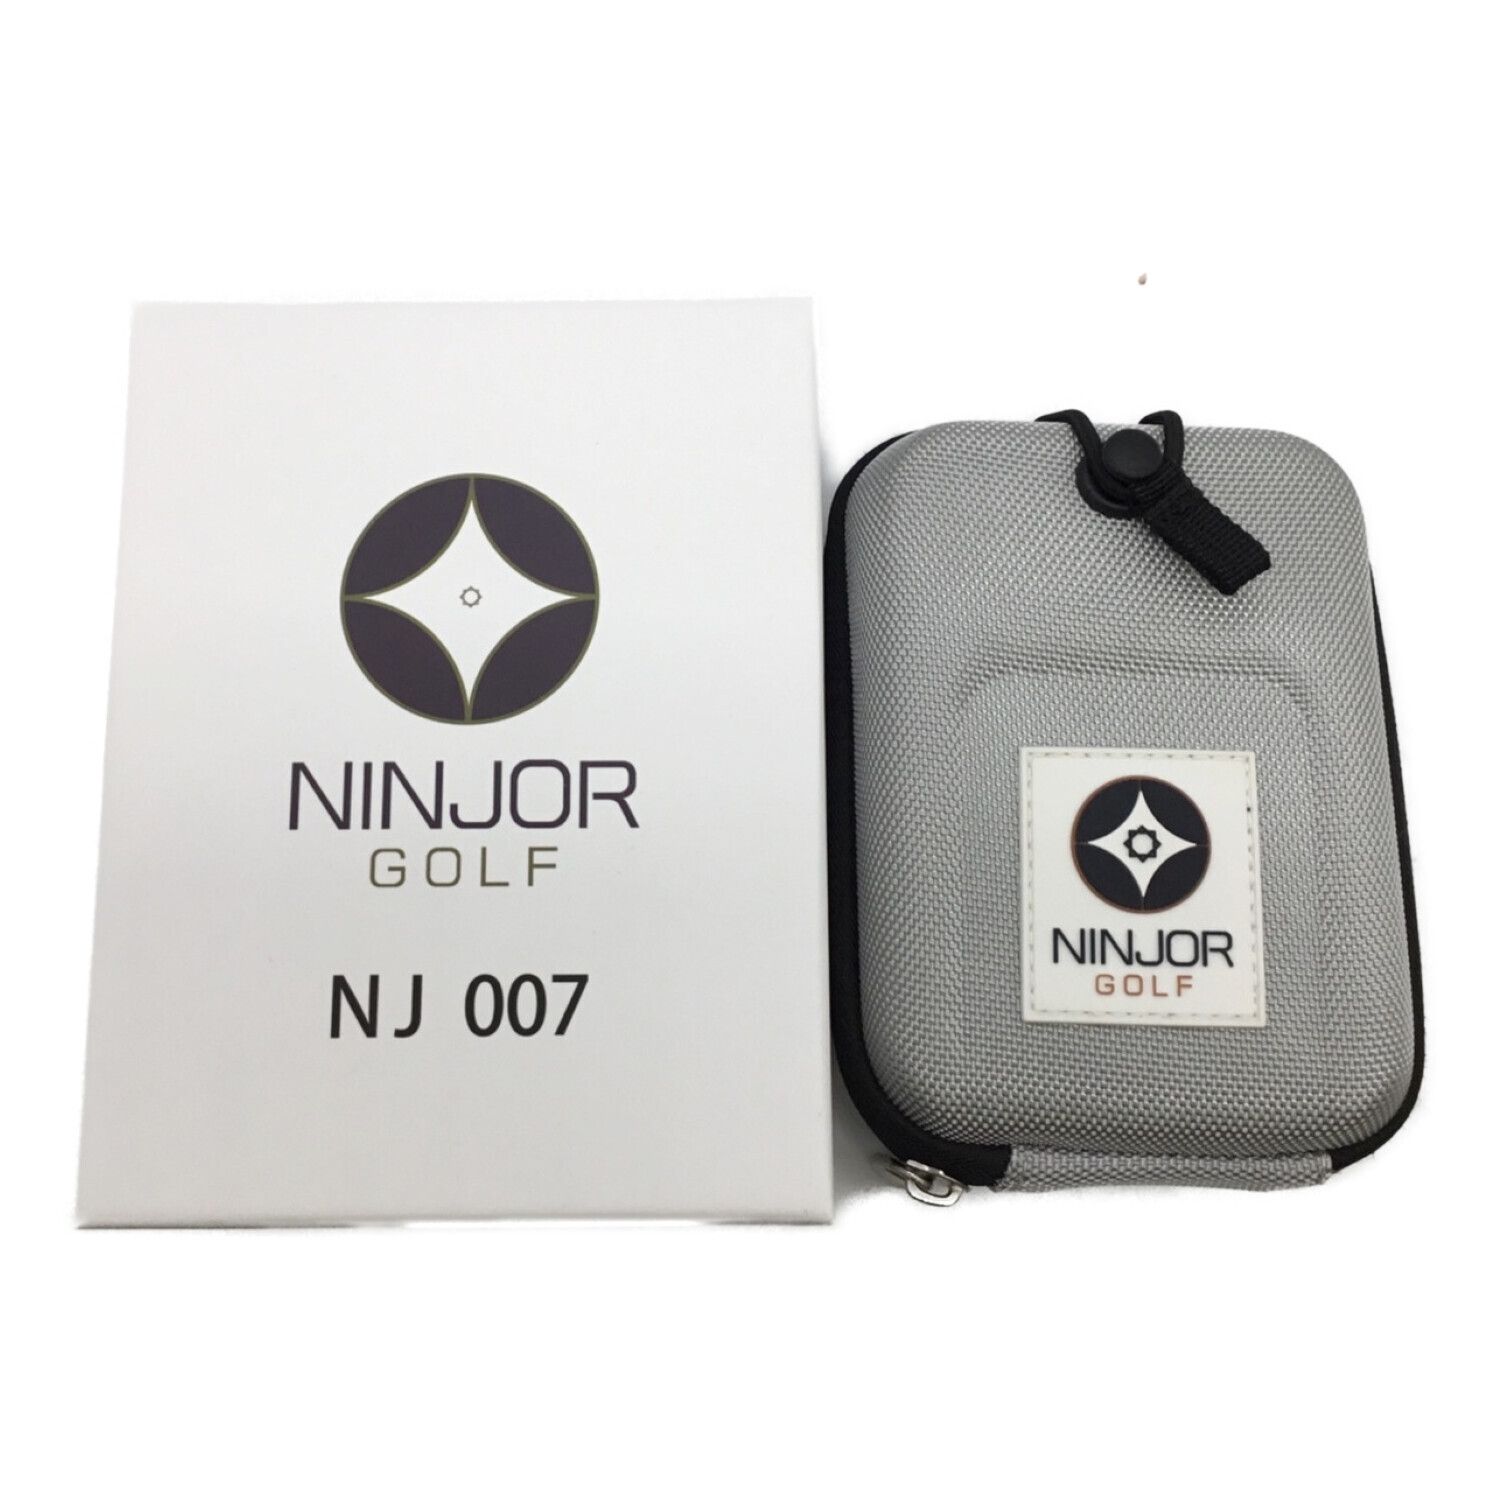 NINJOR GOLF ニンジャーゴルフ レーザー 距離計 NJ± - ラウンド用品